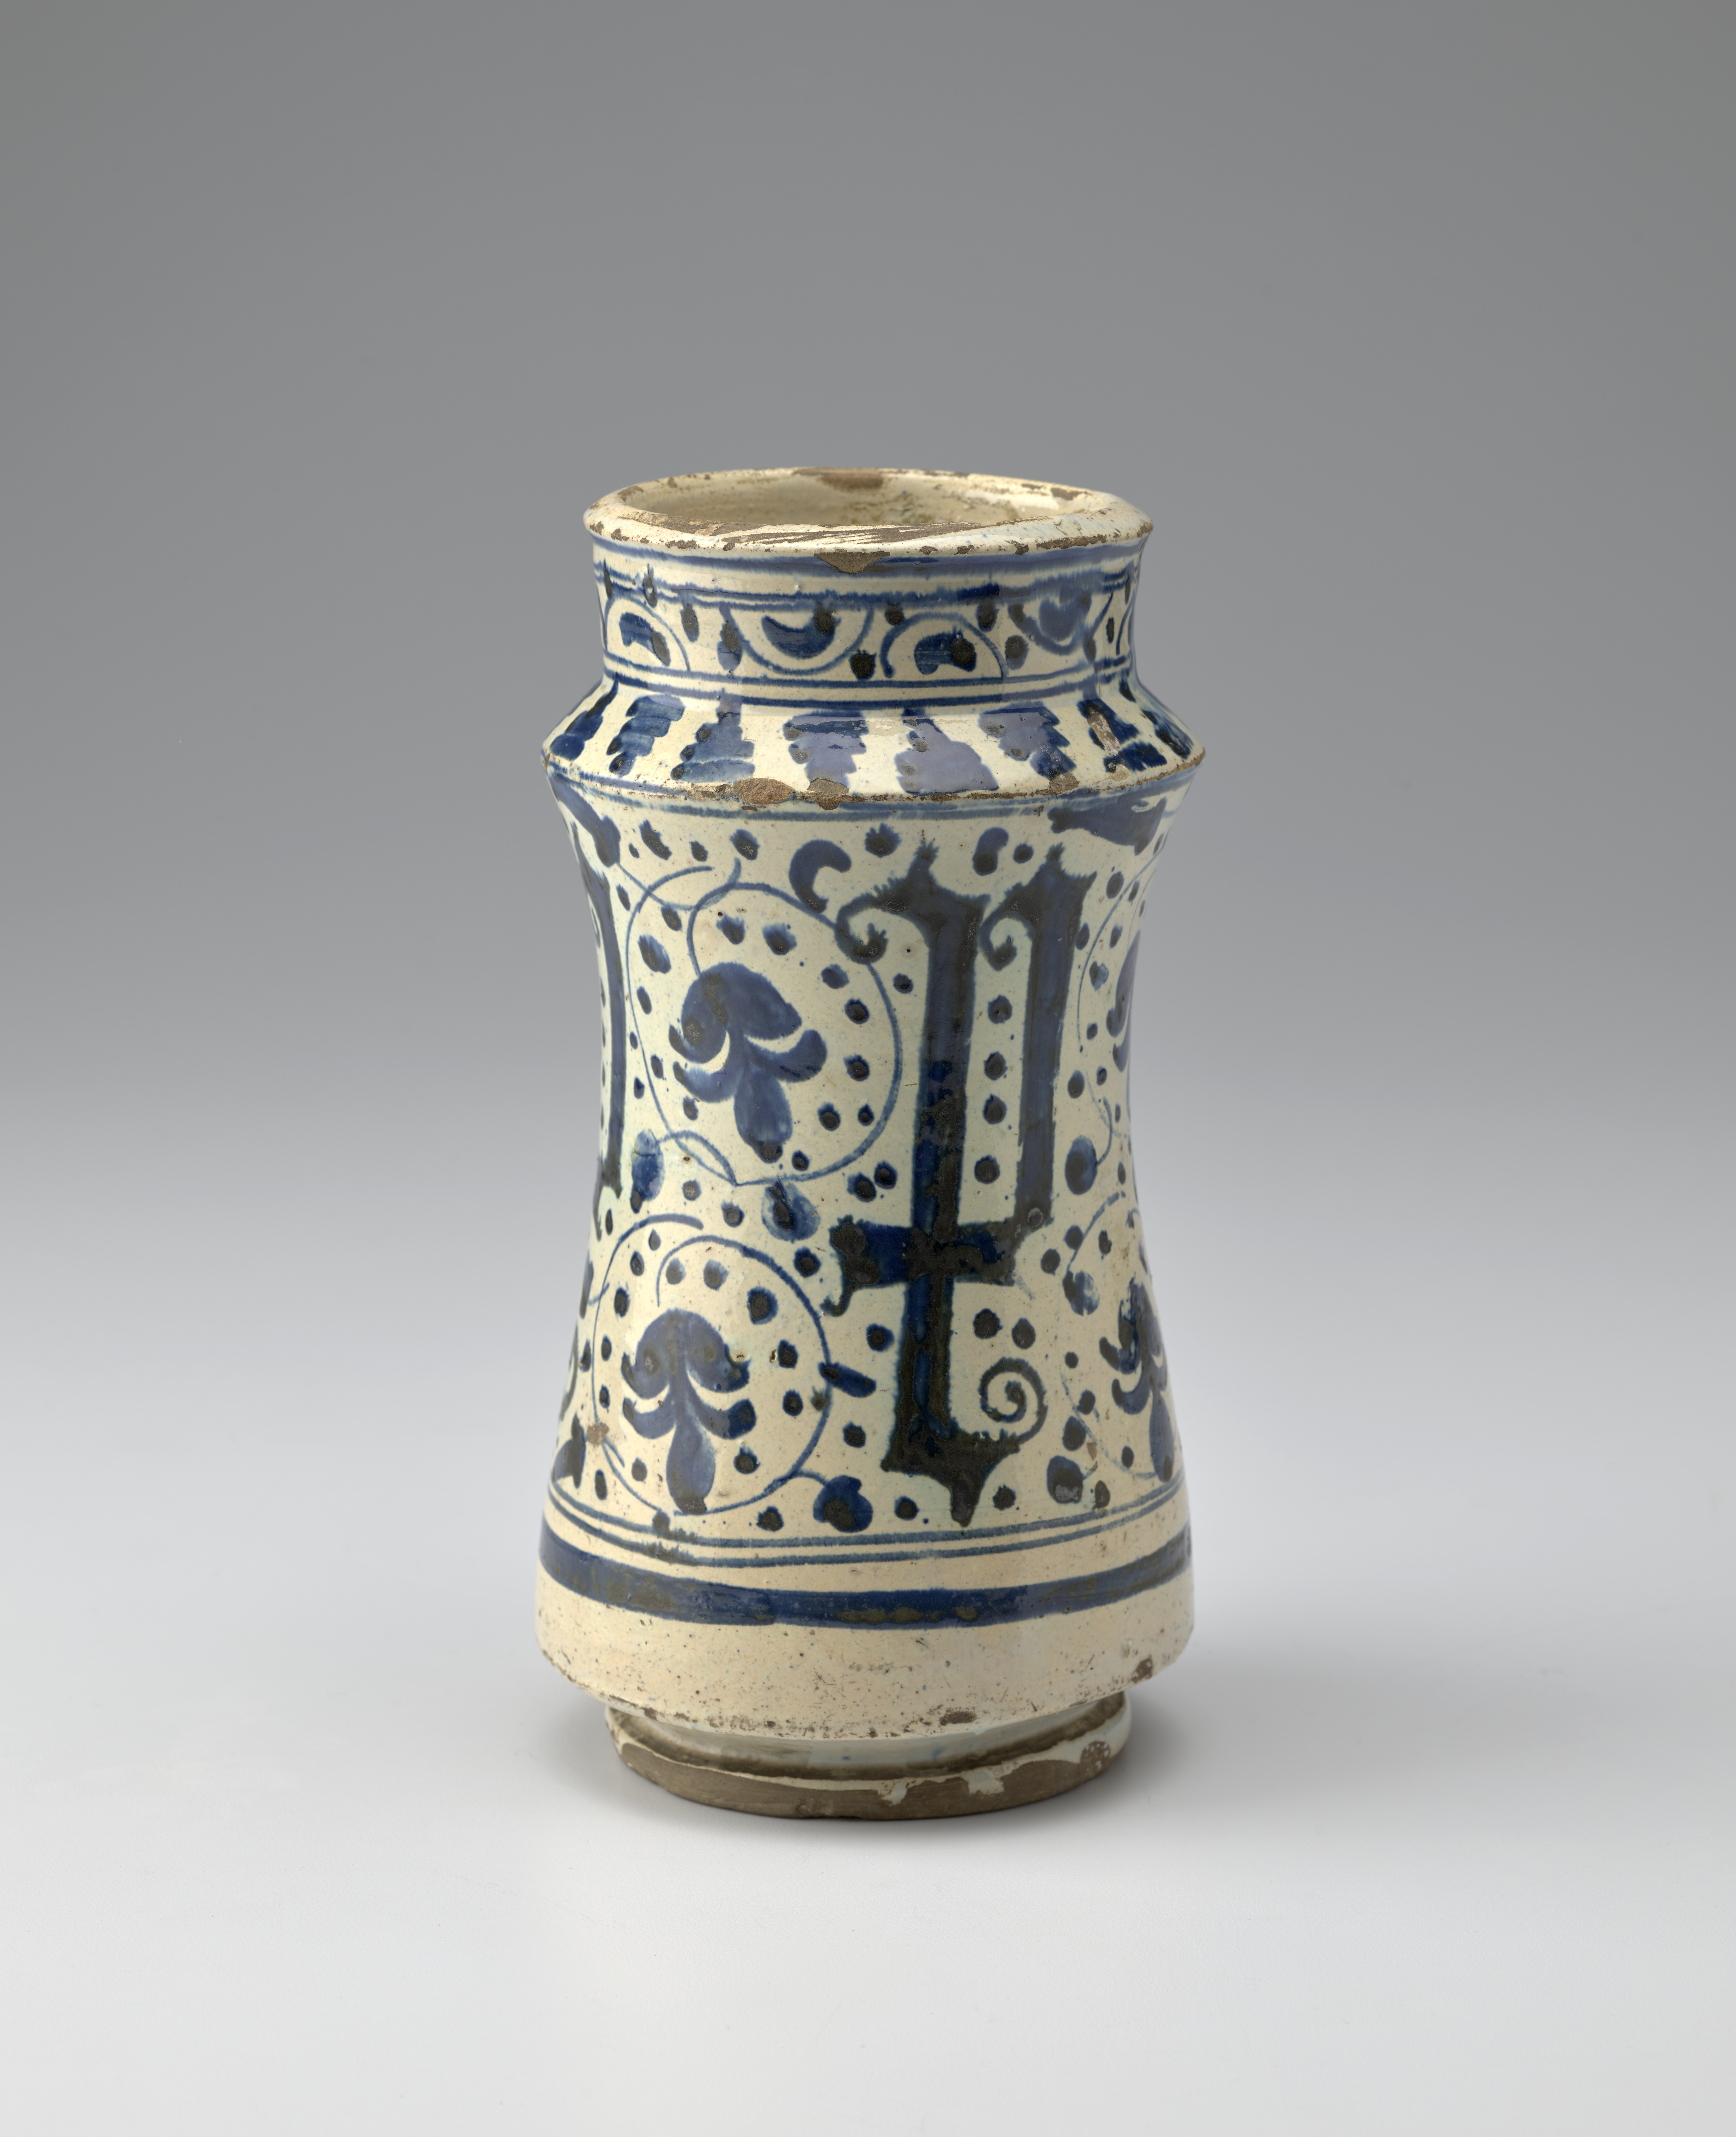 Jarra de cerámica azul y blanca decorada con formas de letras góticas y motivos florales.